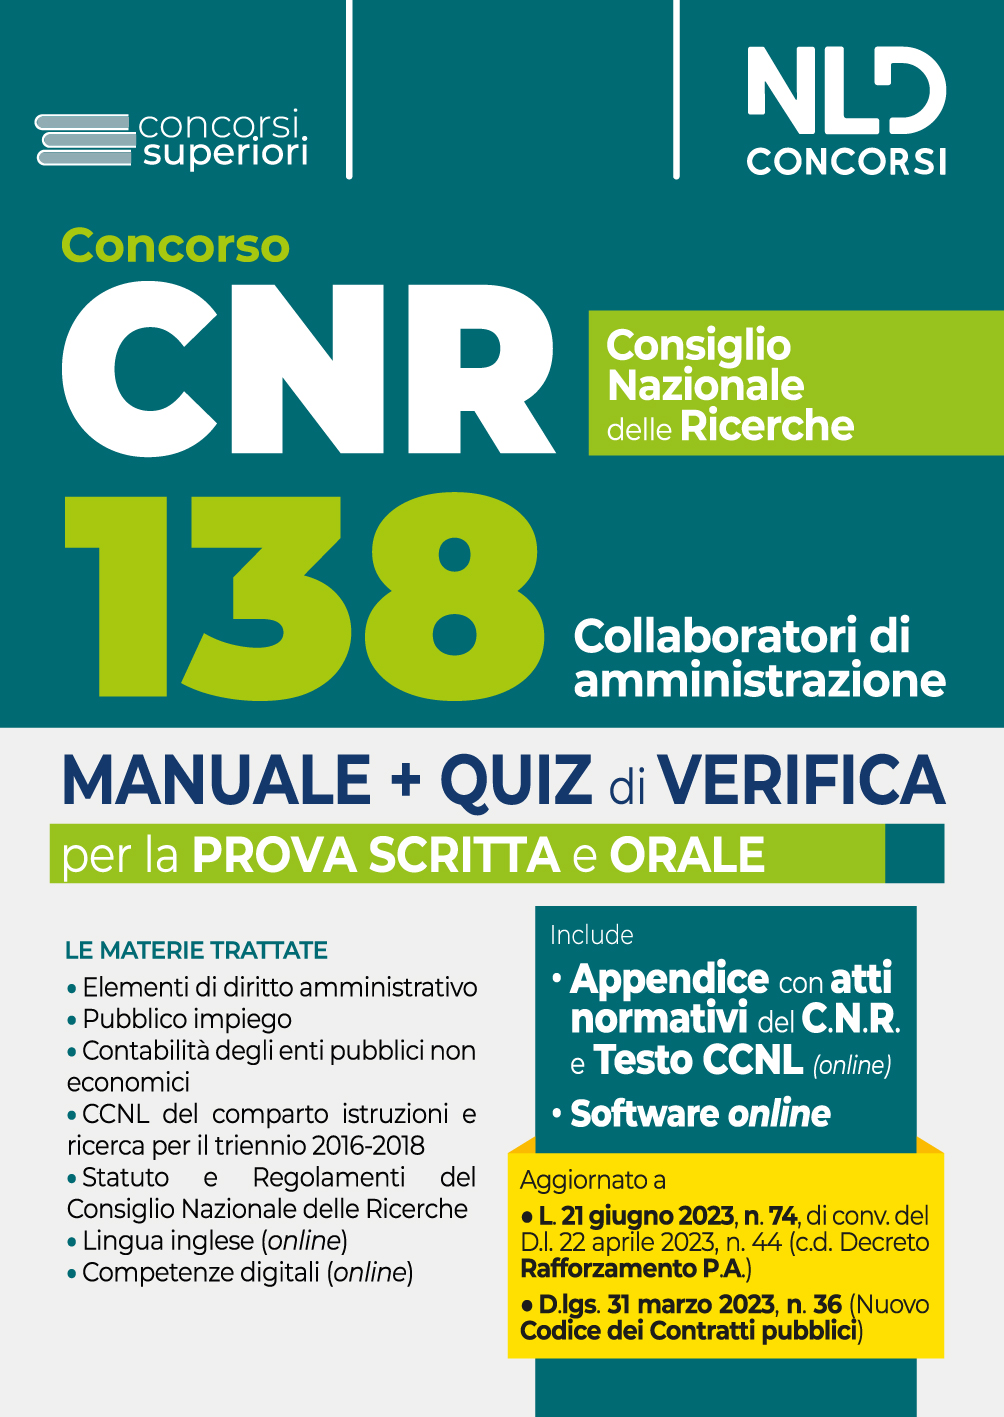 Concorso CNR Consiglio Nazionale delle Ricerche: Manuale + Quiz di verifica 138 Collaboratori di amministrazione 